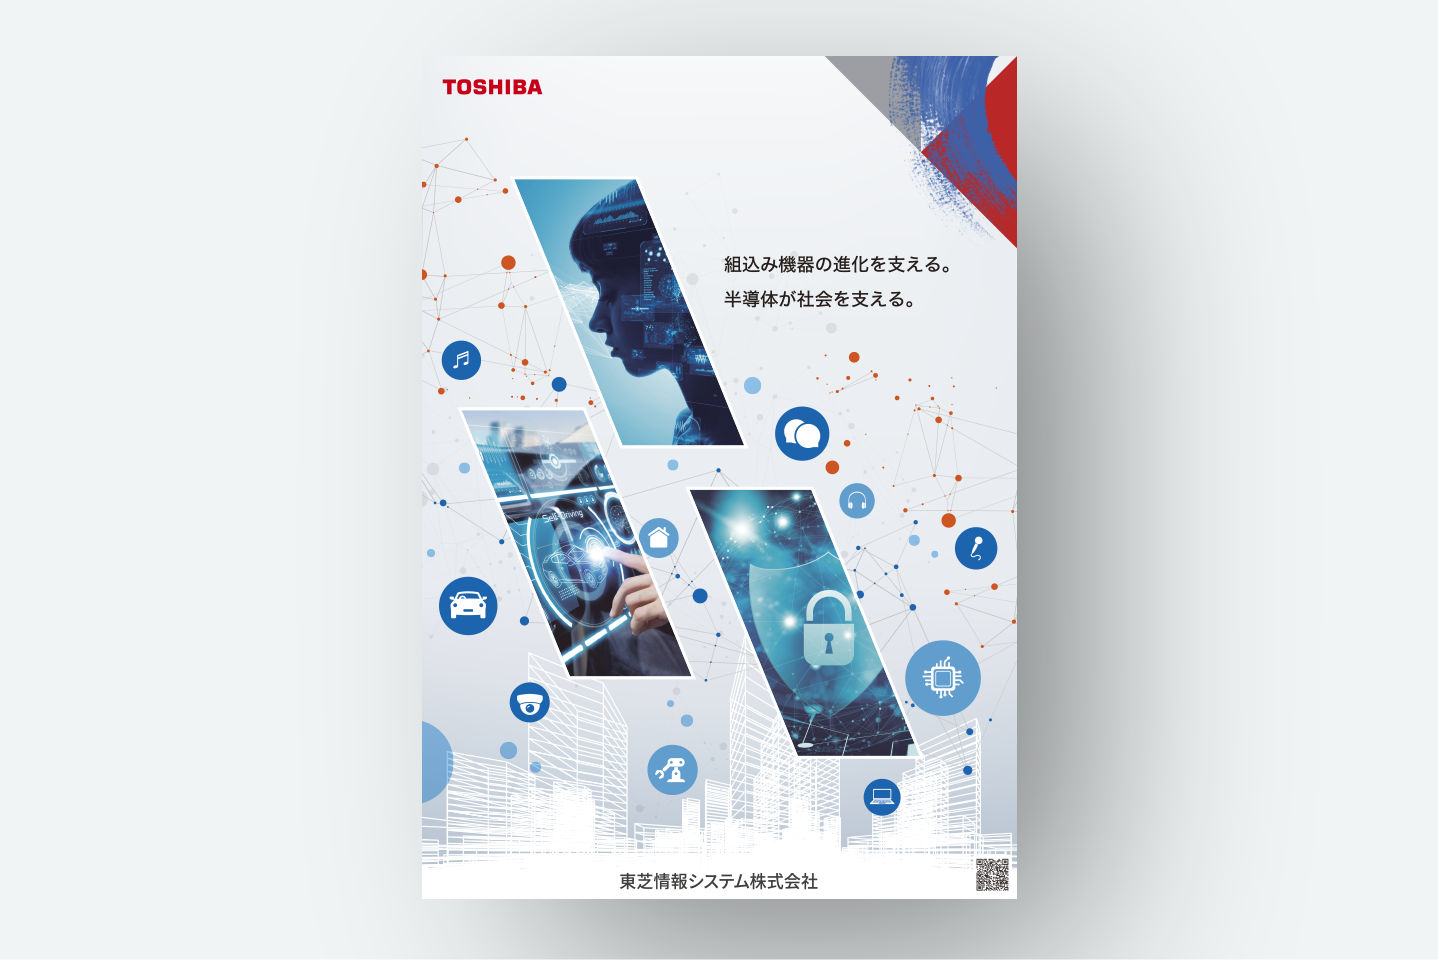 東芝情報システムコーポレートイメージポスター